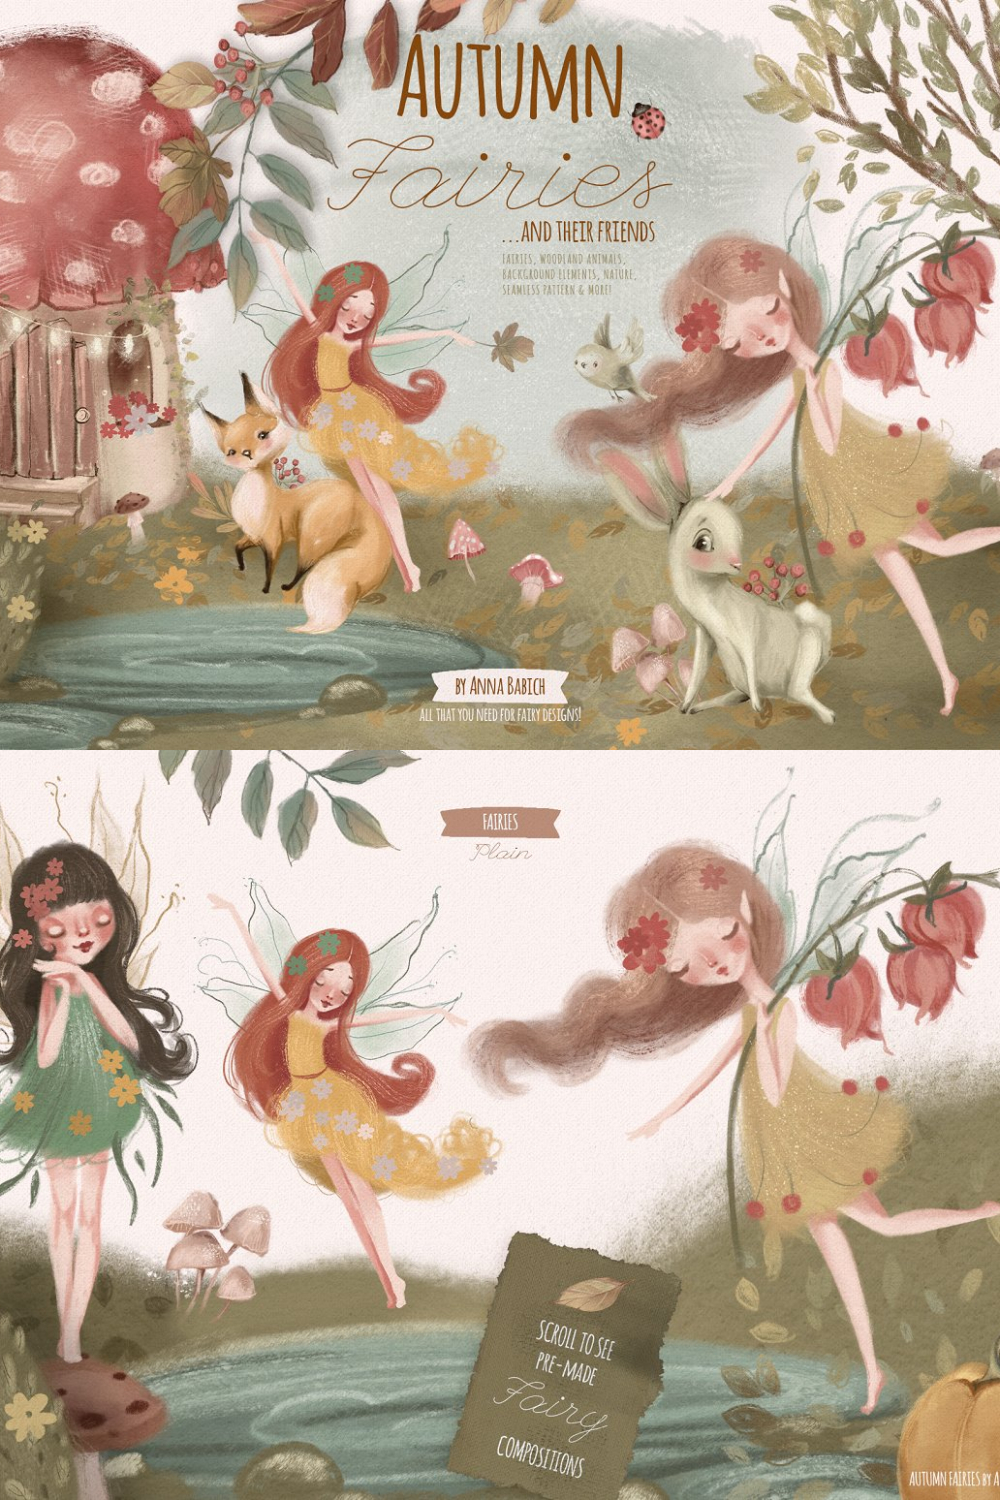 Autumn Fairies - Pinterest.